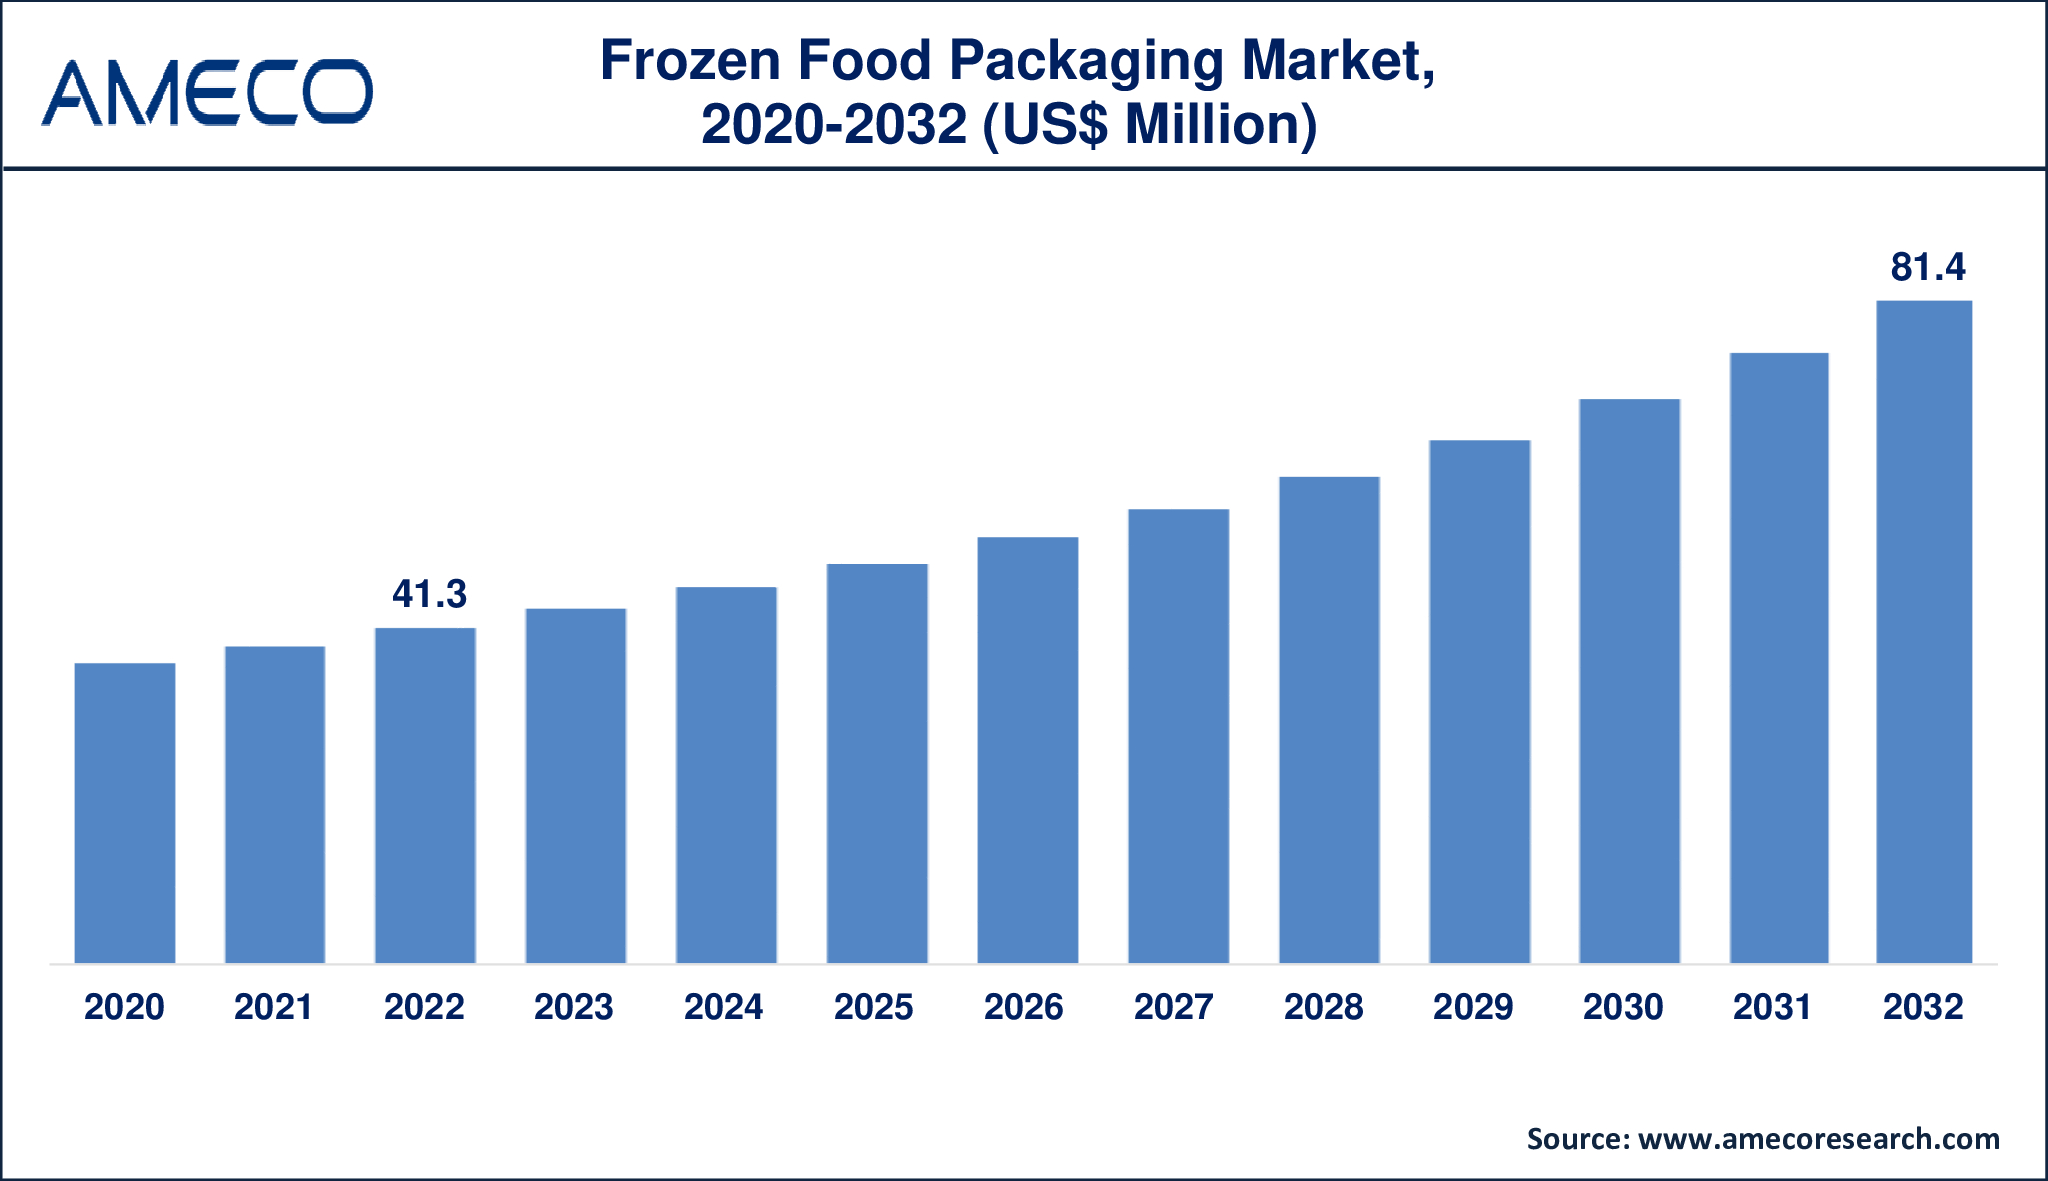 Frozen Food Packaging Market Trends